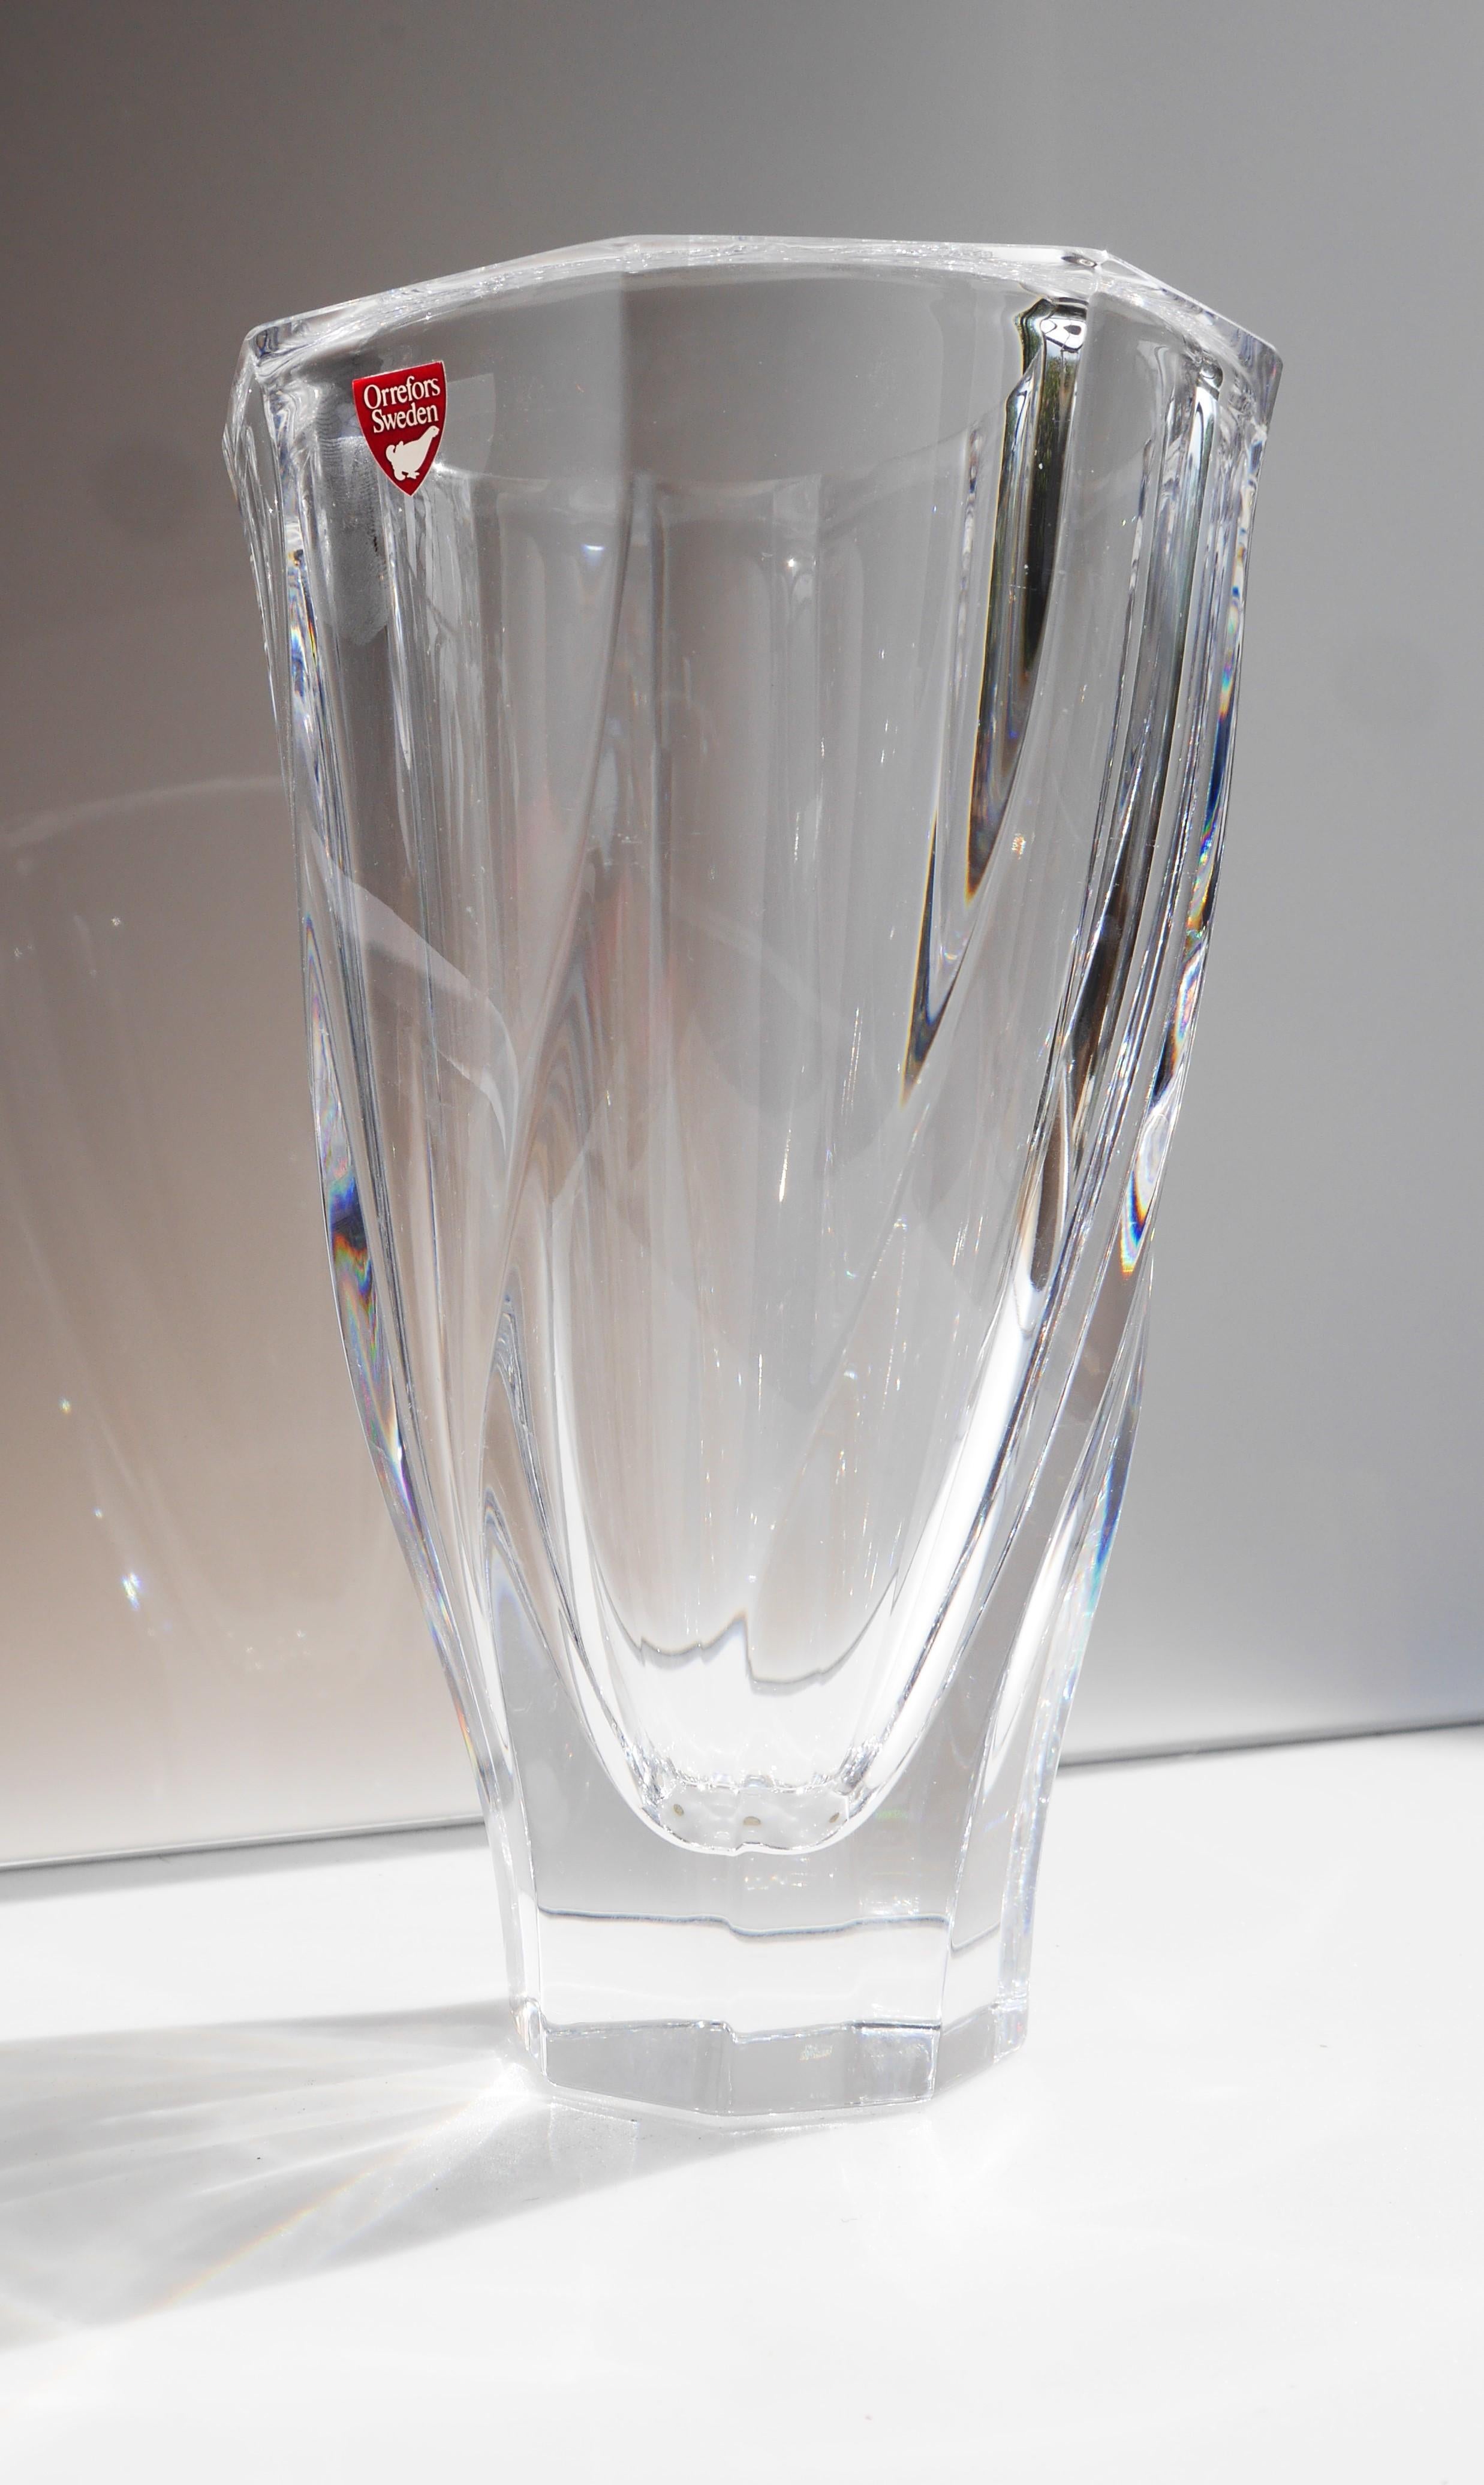 Vase aus Kristallglas von Olle Alberius für Orrefors, Schweden (Handgefertigt)